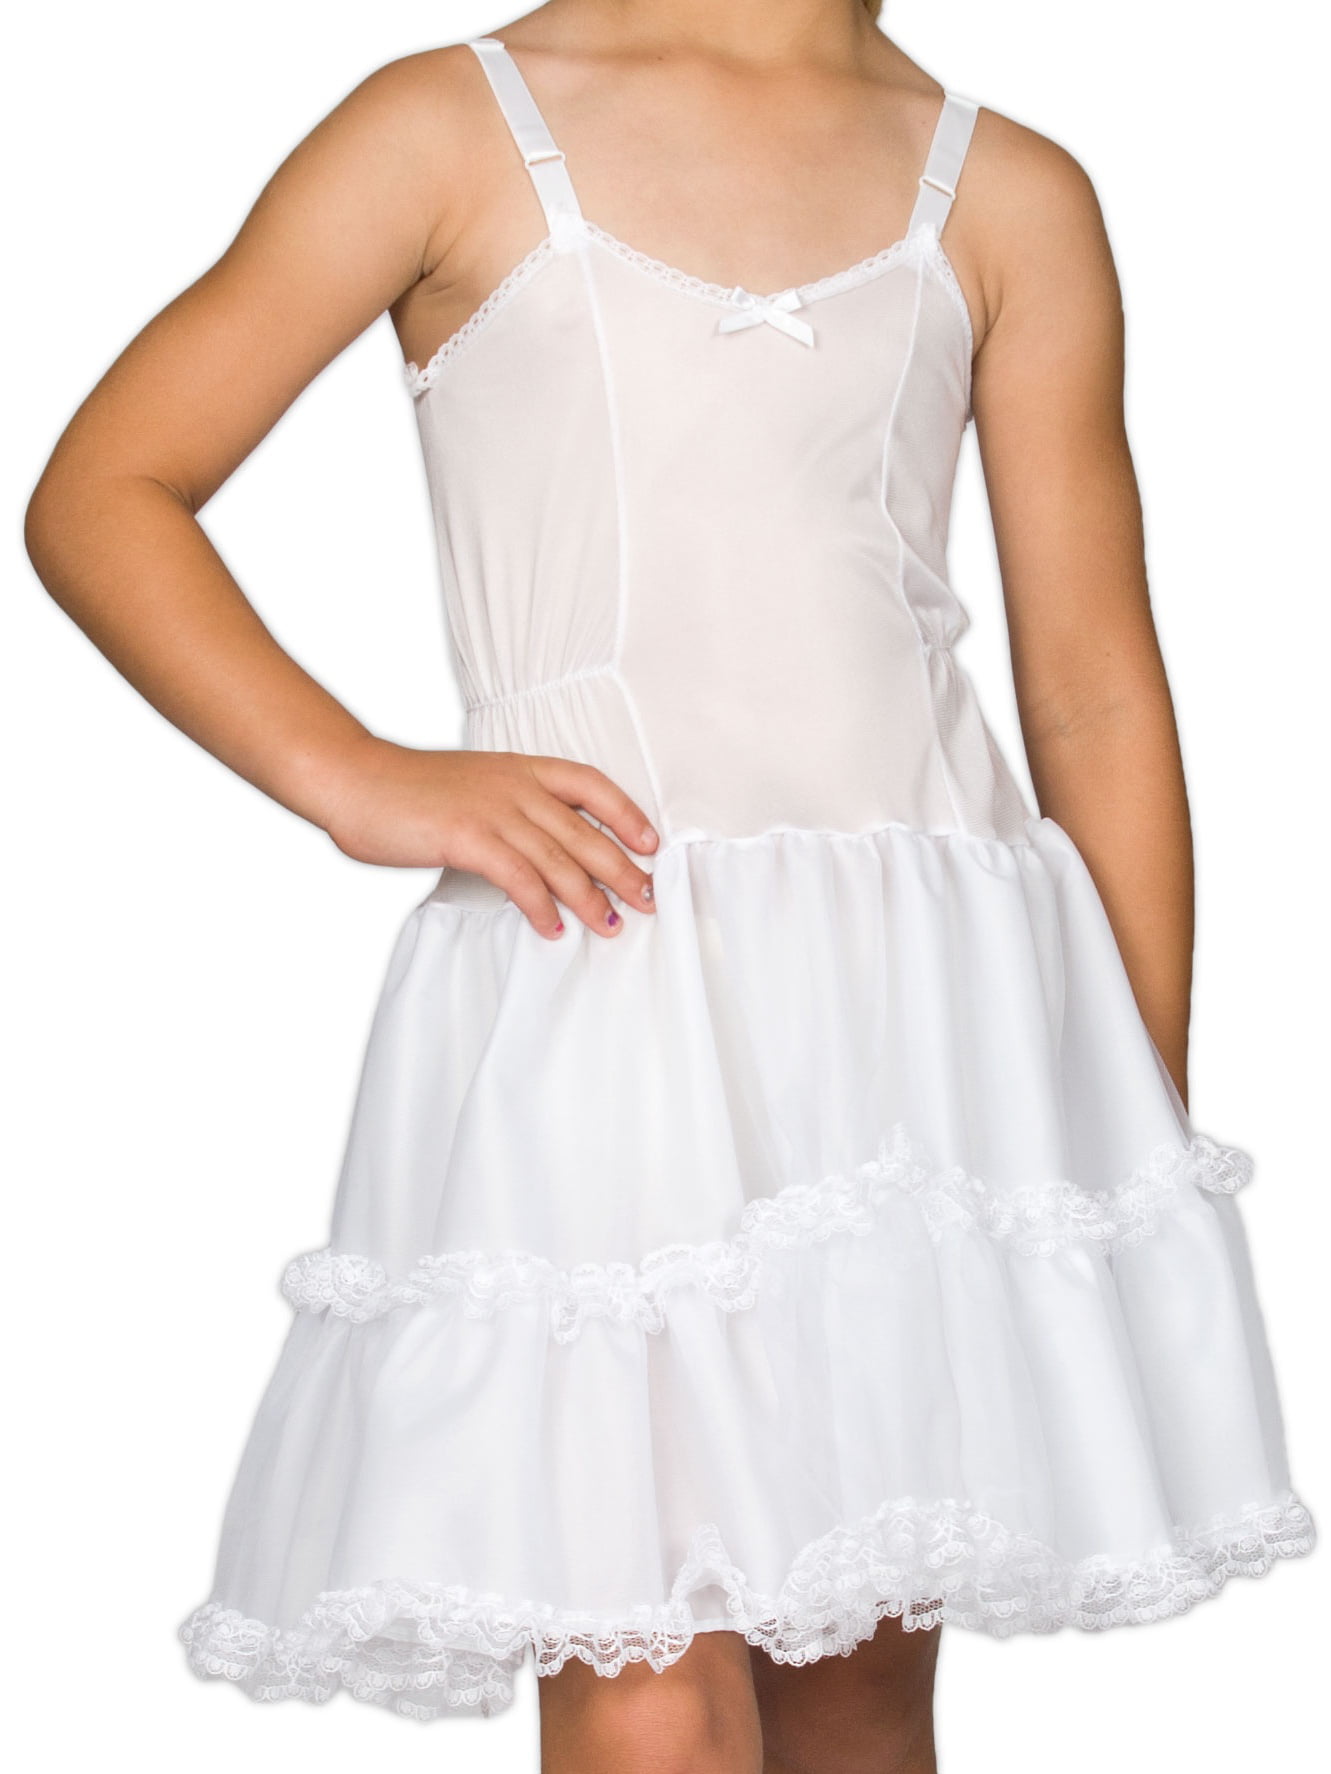 I.C Collections Little Girls White Adjustable Nylon Slip